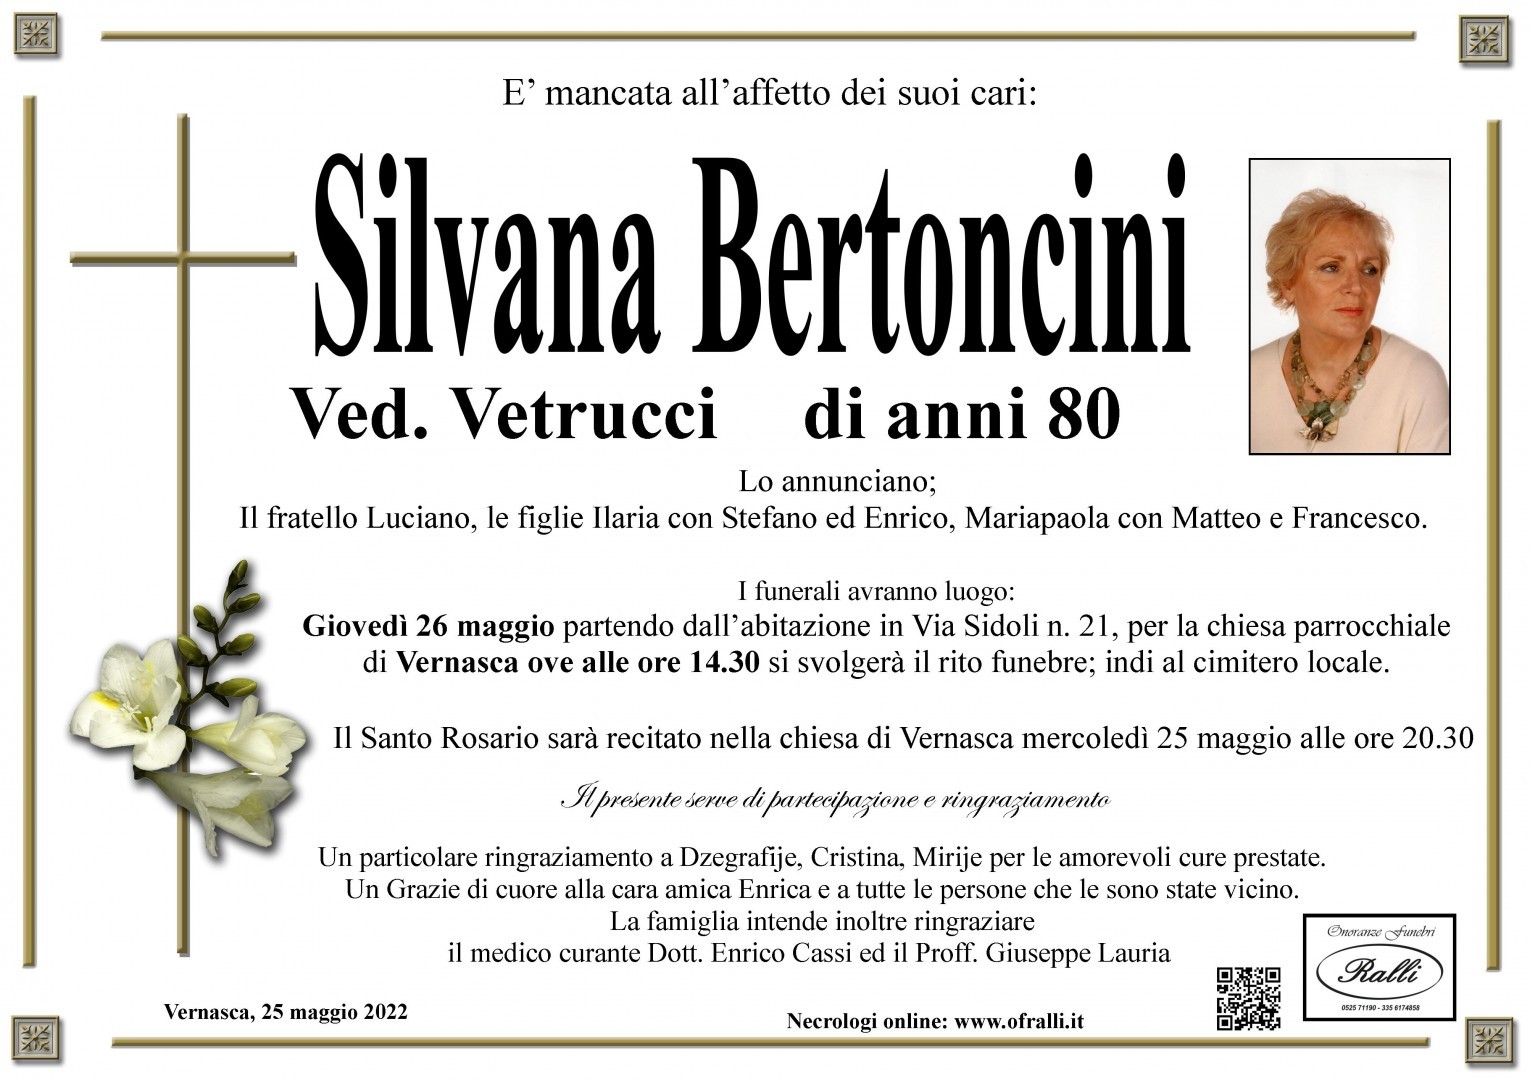 Silvana Bertoncini